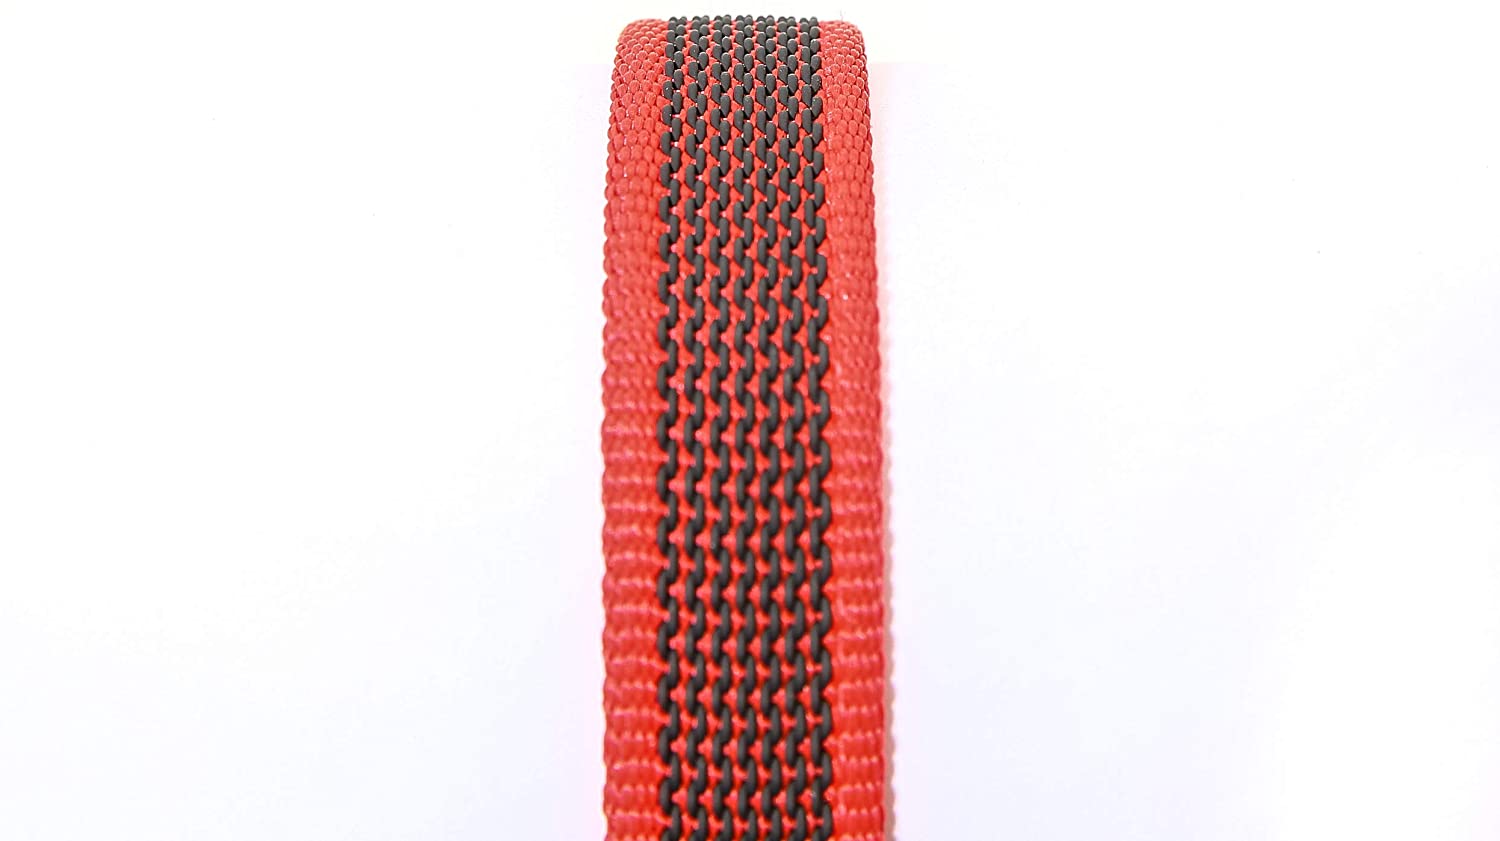  Julius-K9 Correa, Rojo-Gris, 20 mm x 1,2 m con Aro Tórico 